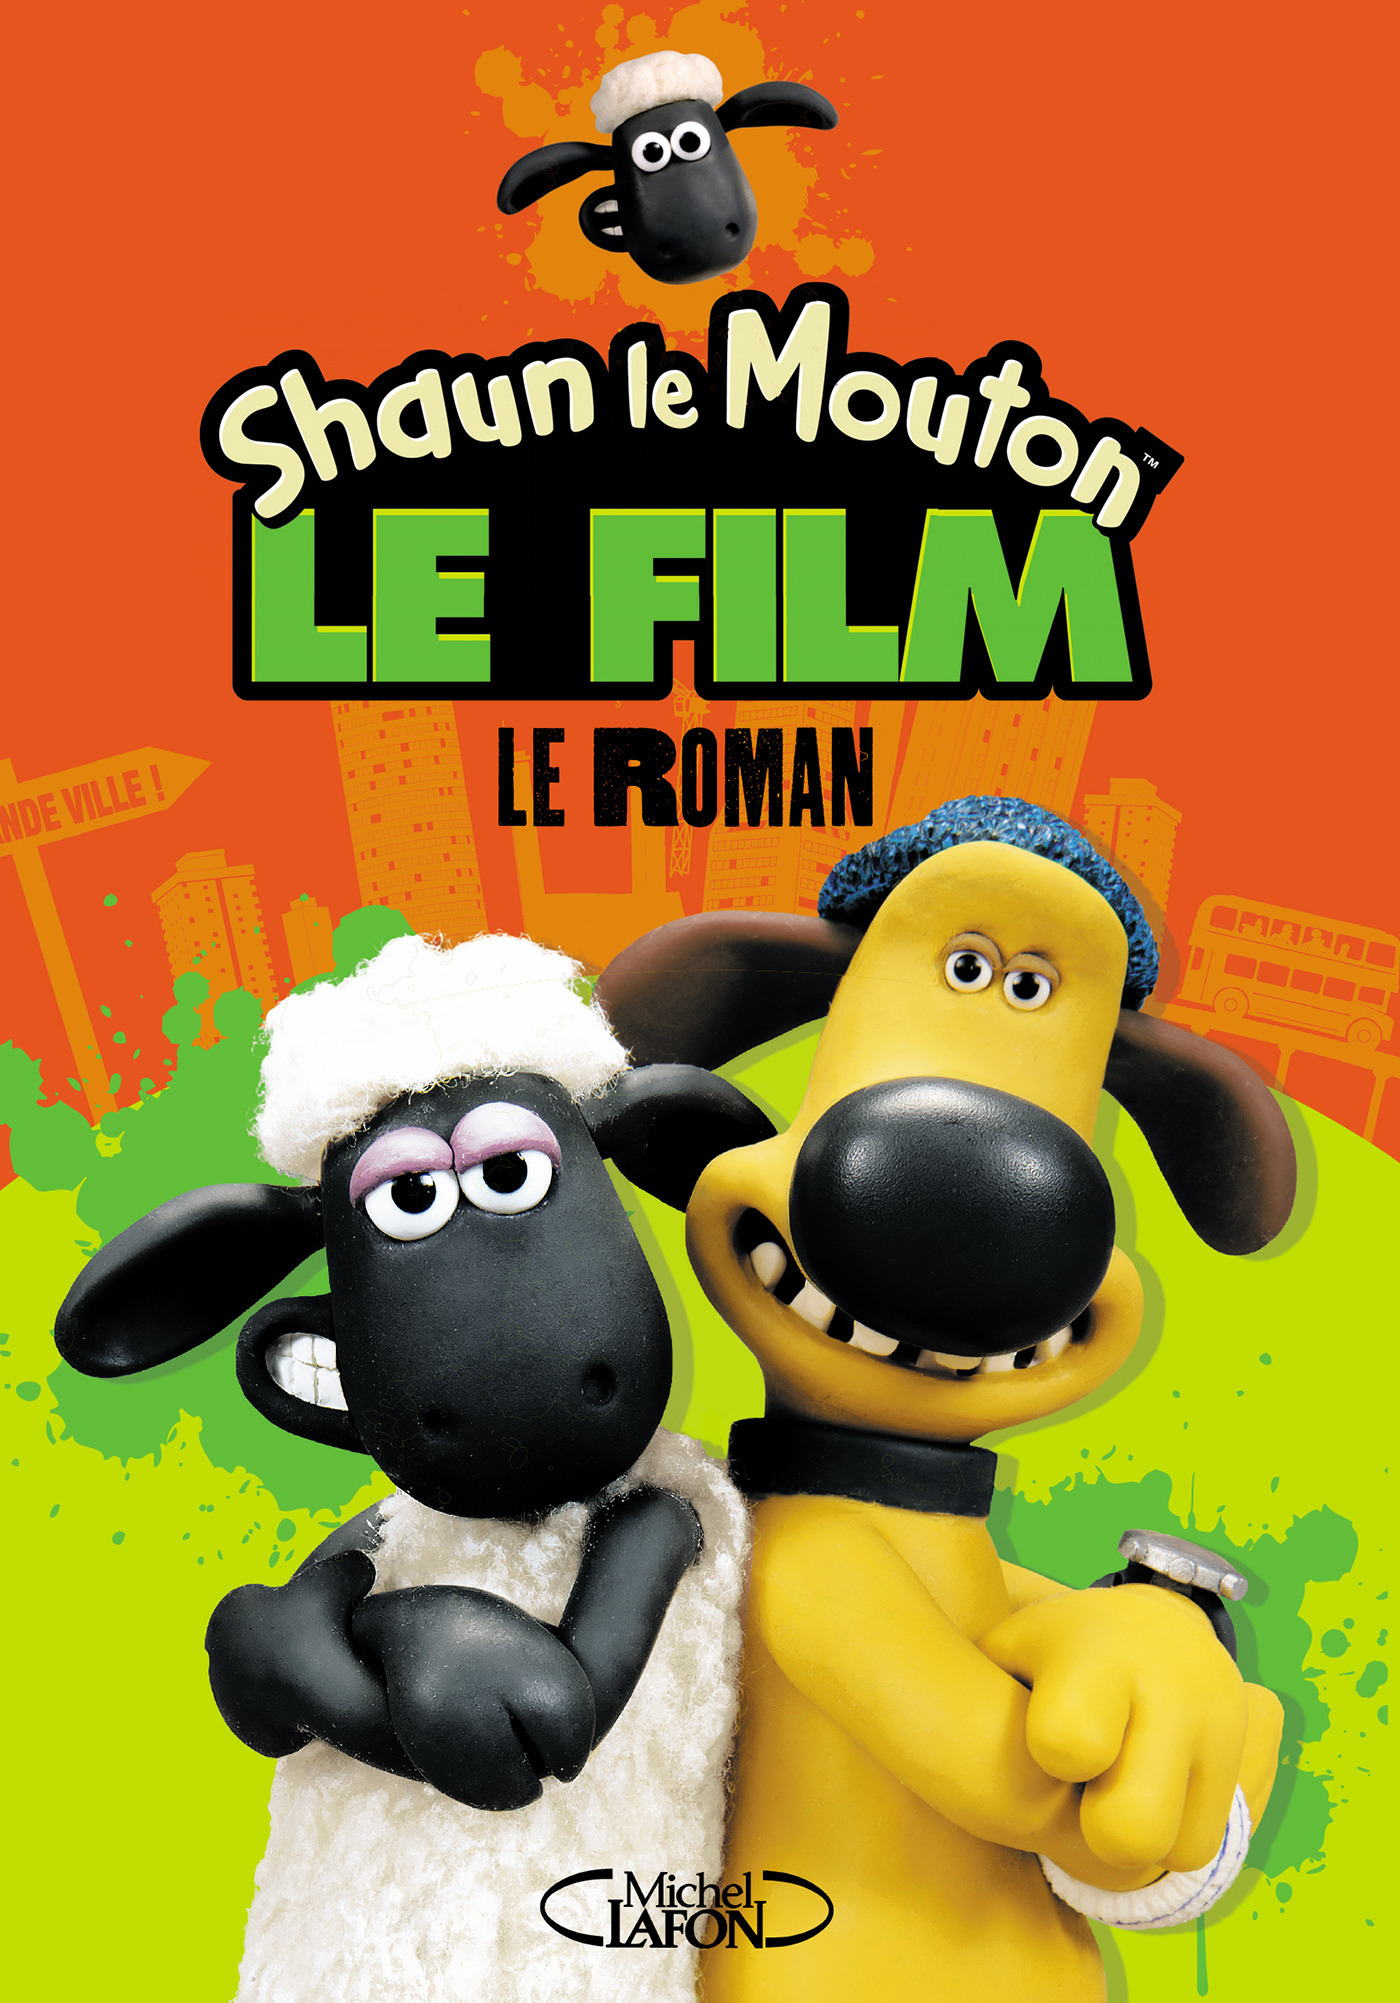 Shaun le Mouton le film - Le roman